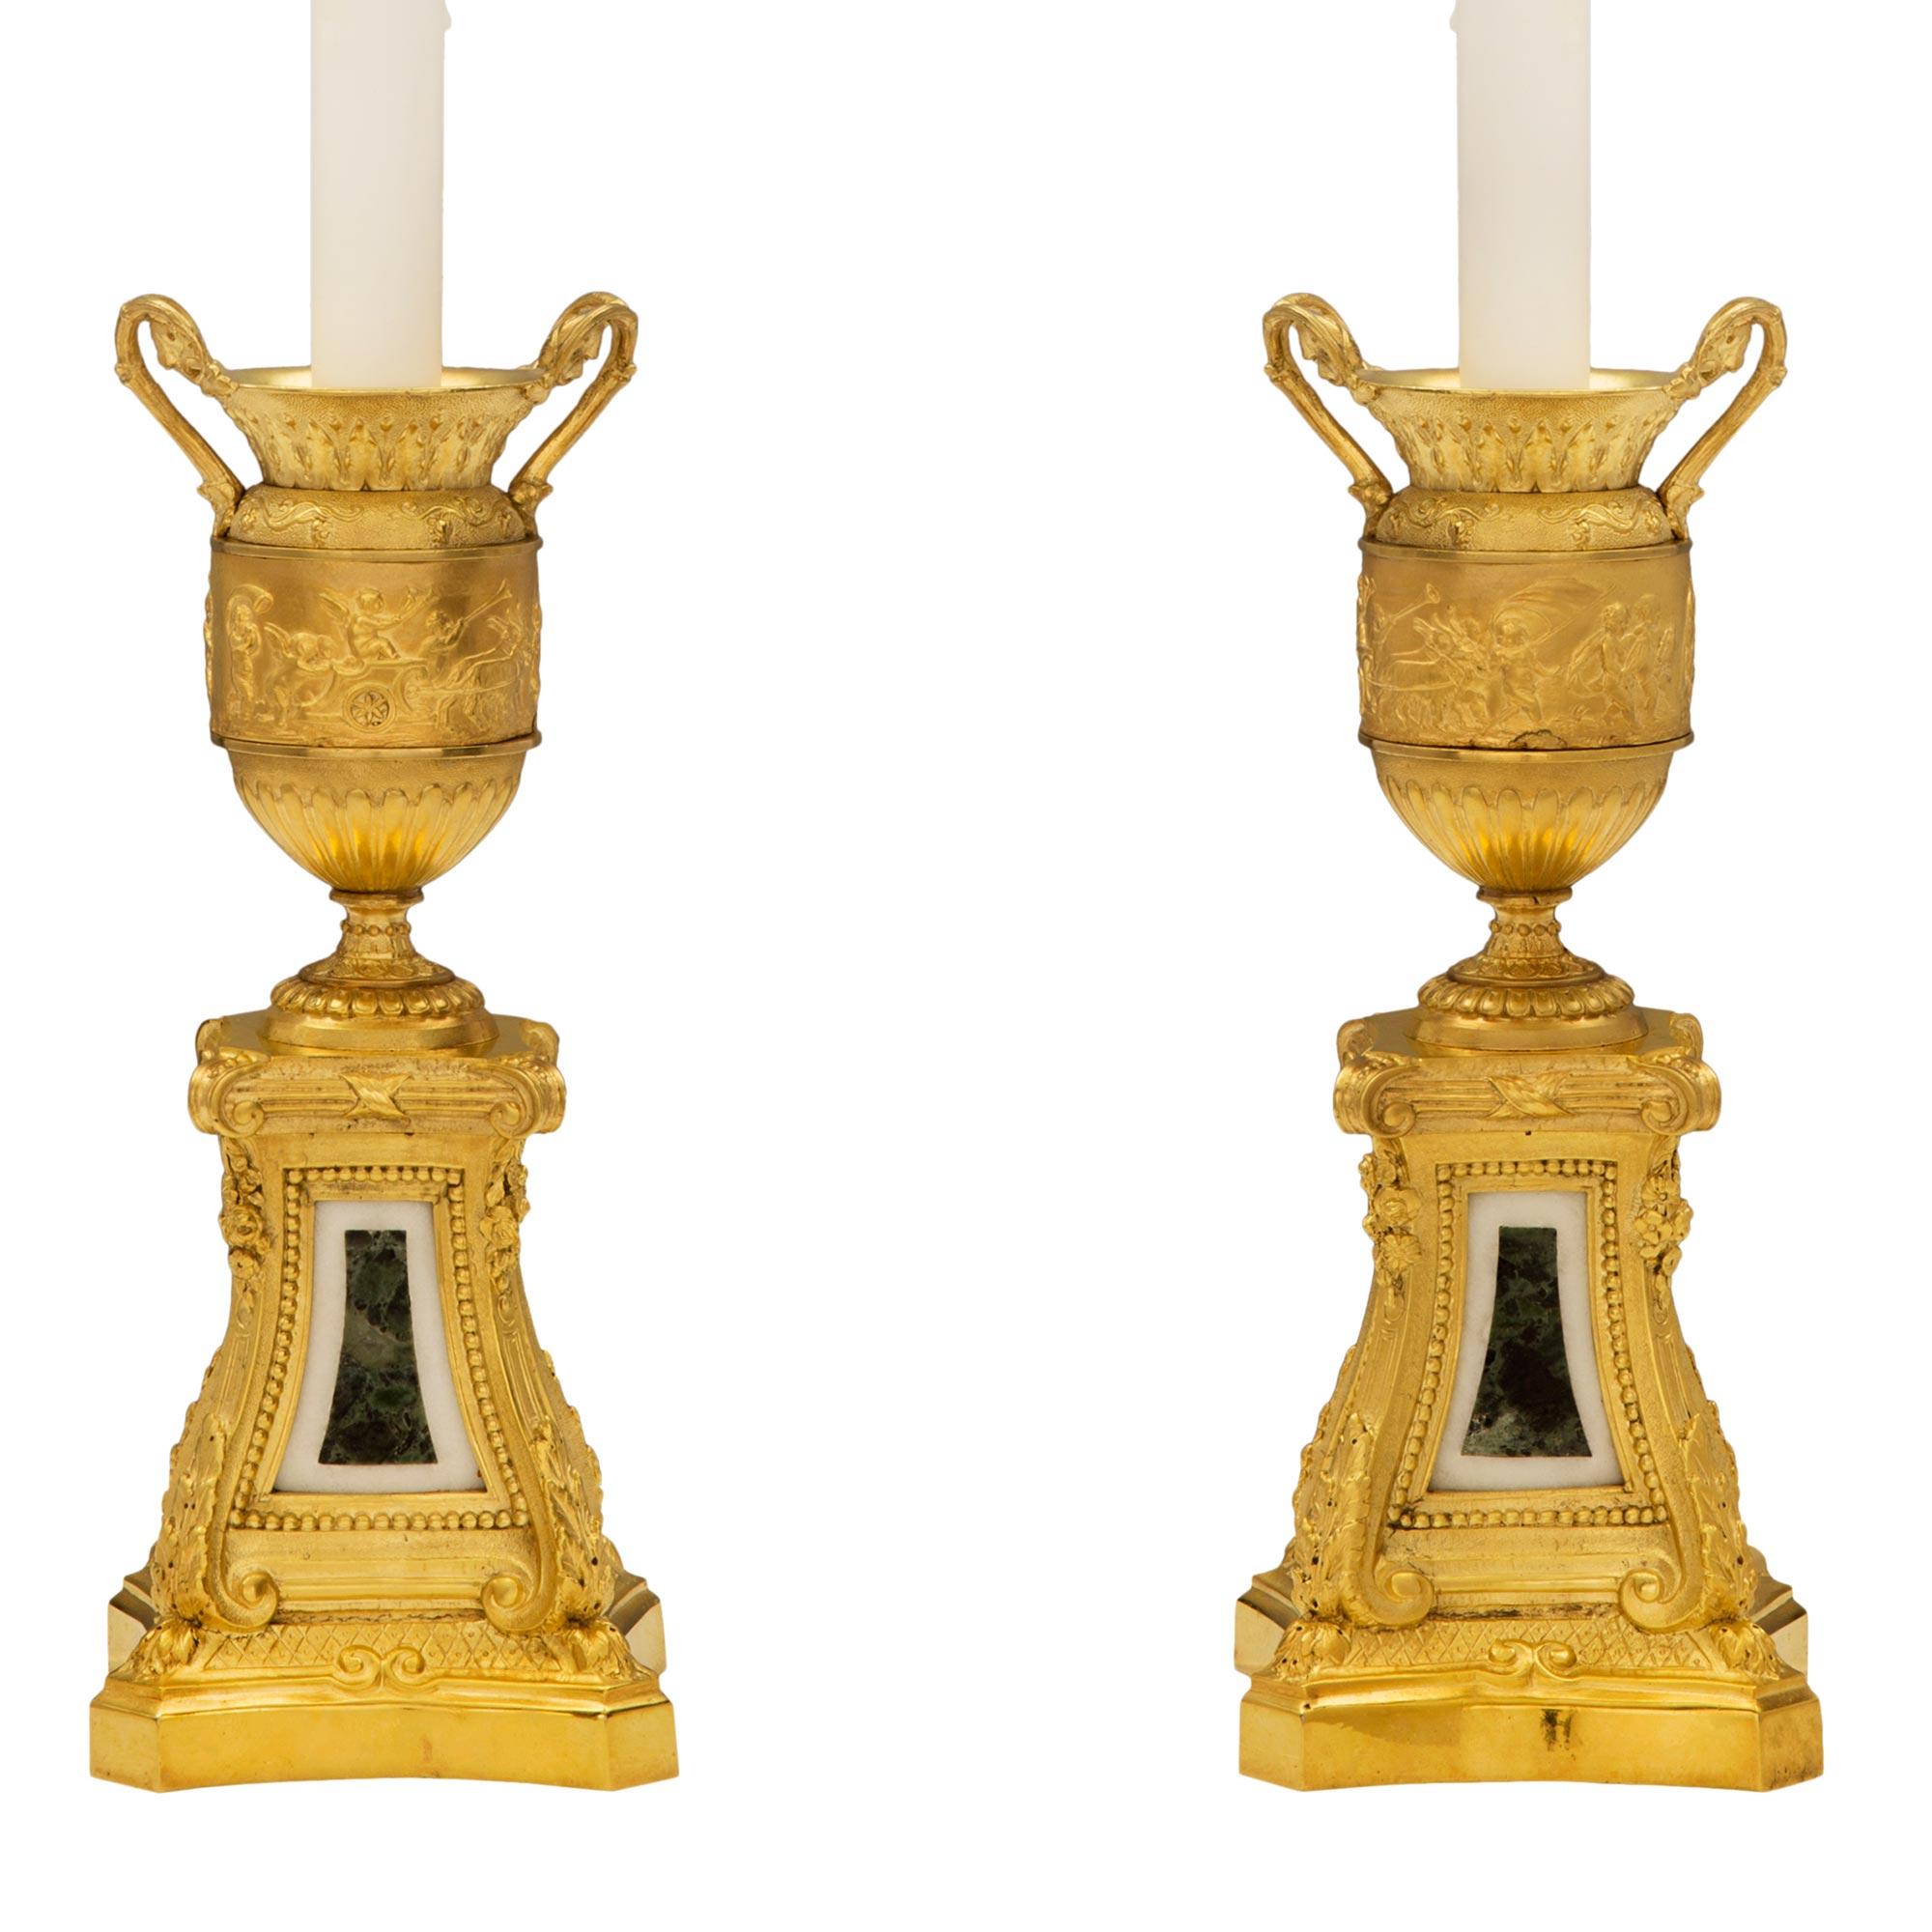 Exceptionnelle paire de lampes françaises du XIXe siècle, de style Louis XVI, en bronze doré, marbre blanc de Carrare et marbre Vert de Patricia, d'après un modèle de Clodion. Chaque lampe est surélevée par une base carrée aux côtés concaves et à la